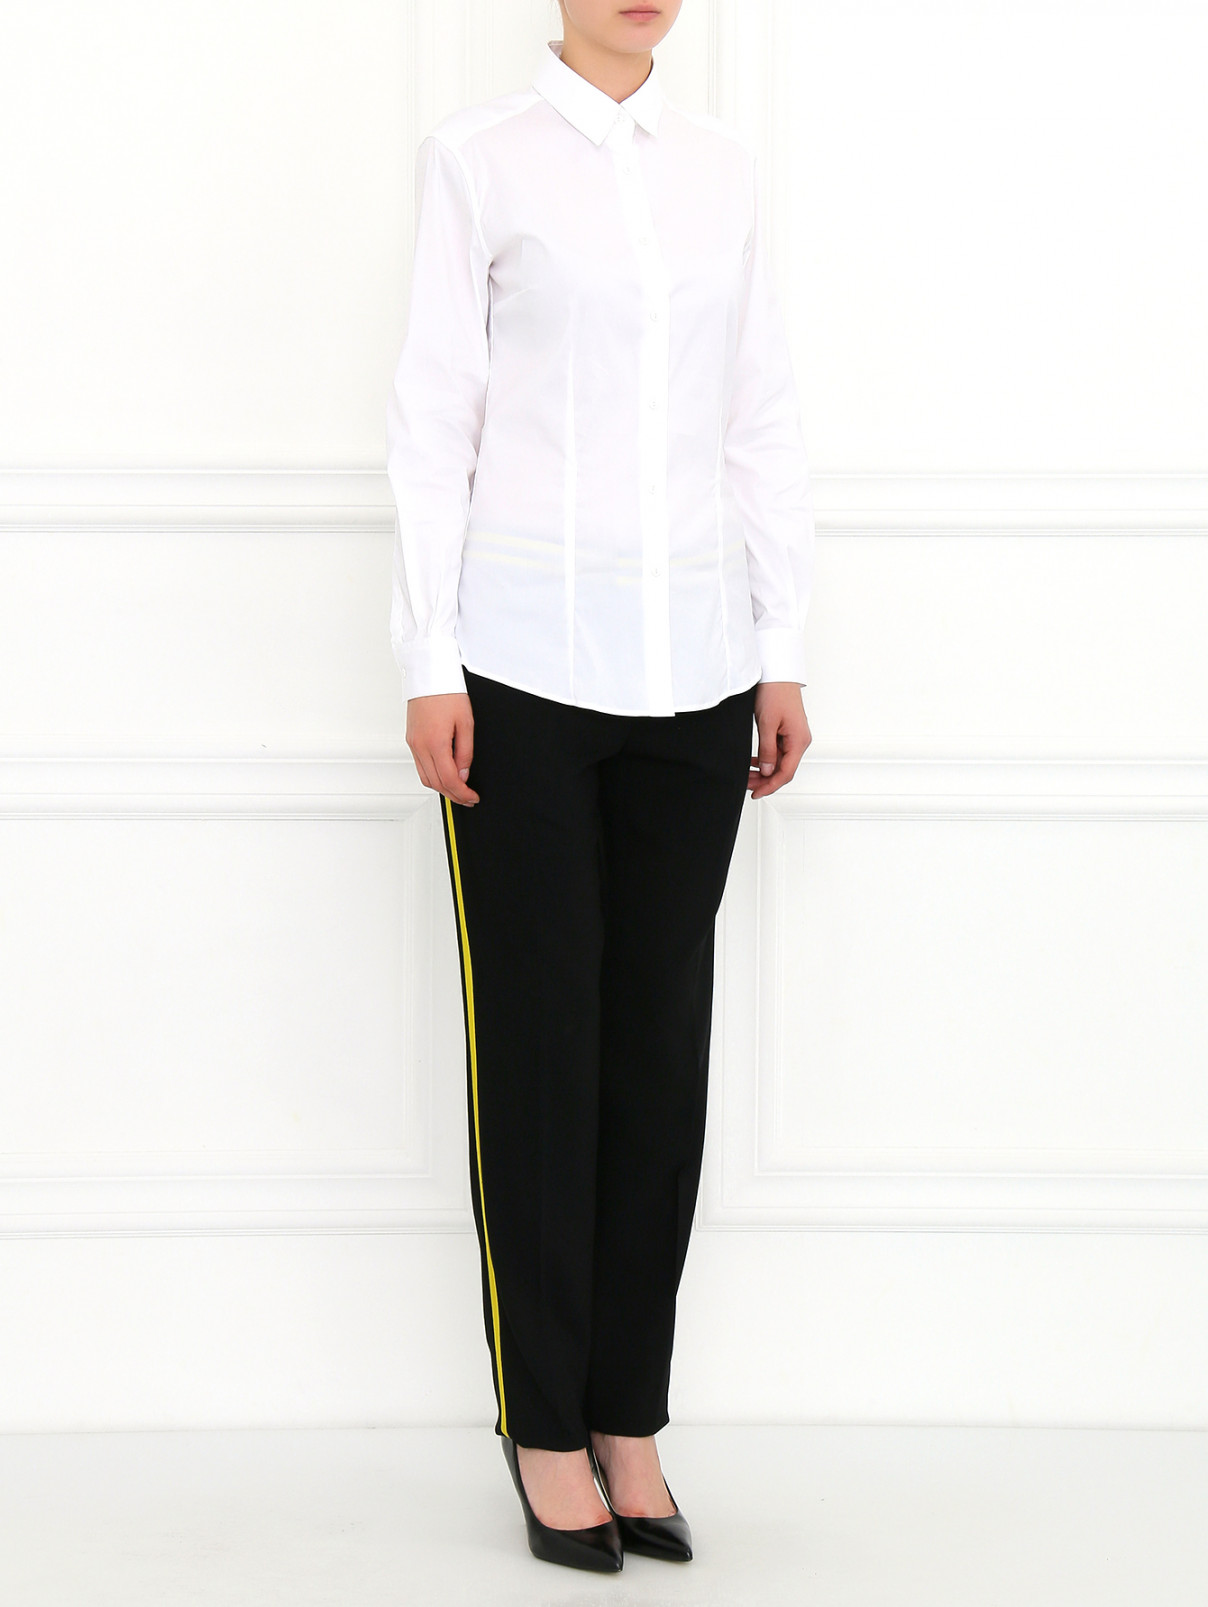 Узкие брюки с контрастной отделкой Barbara Bui  –  Модель Общий вид  – Цвет:  Черный